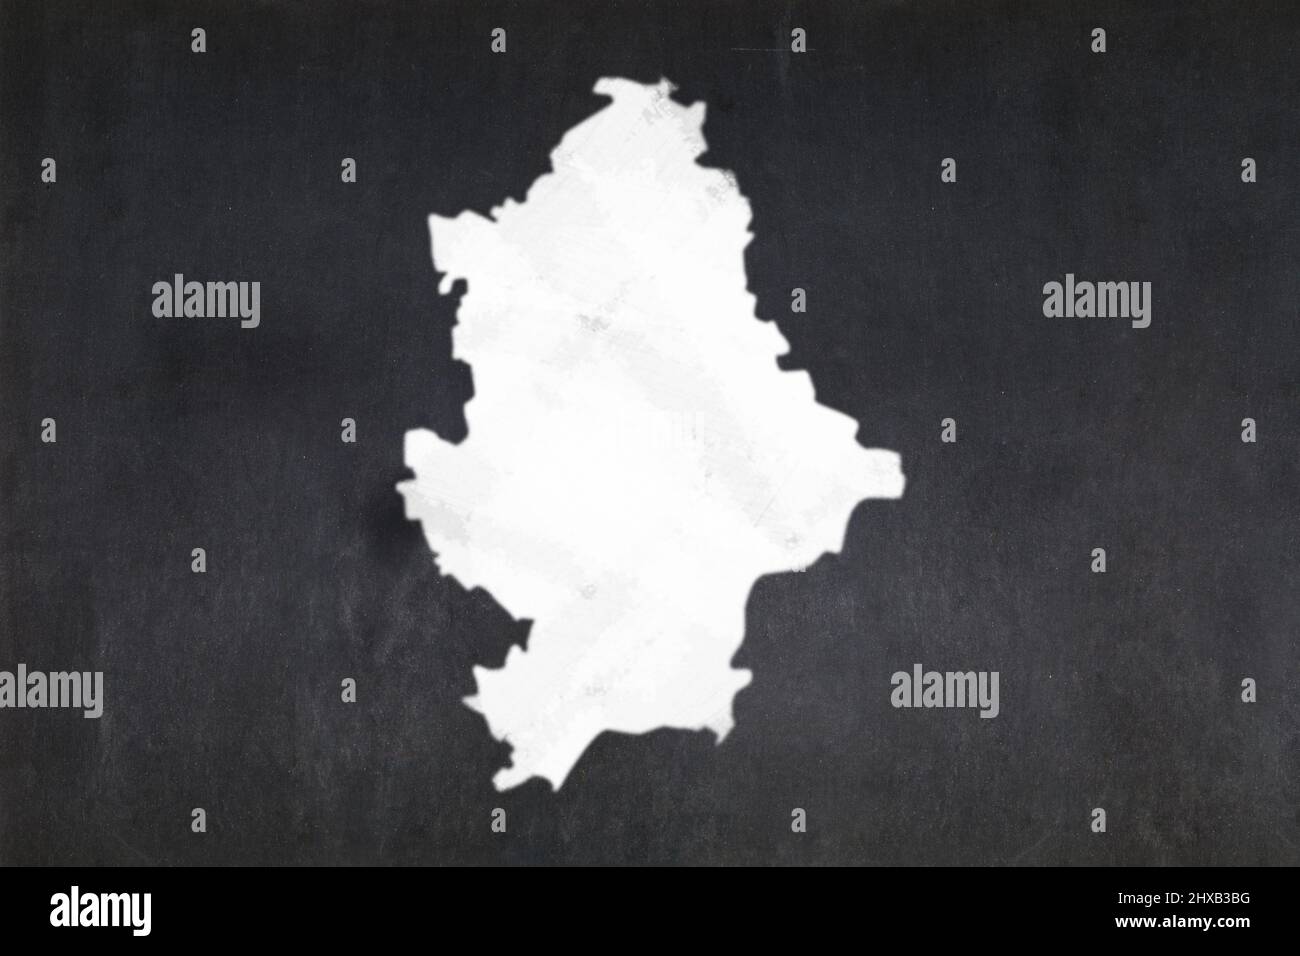 Pizarra con un mapa de Donetsk dibujado en el medio. Foto de stock